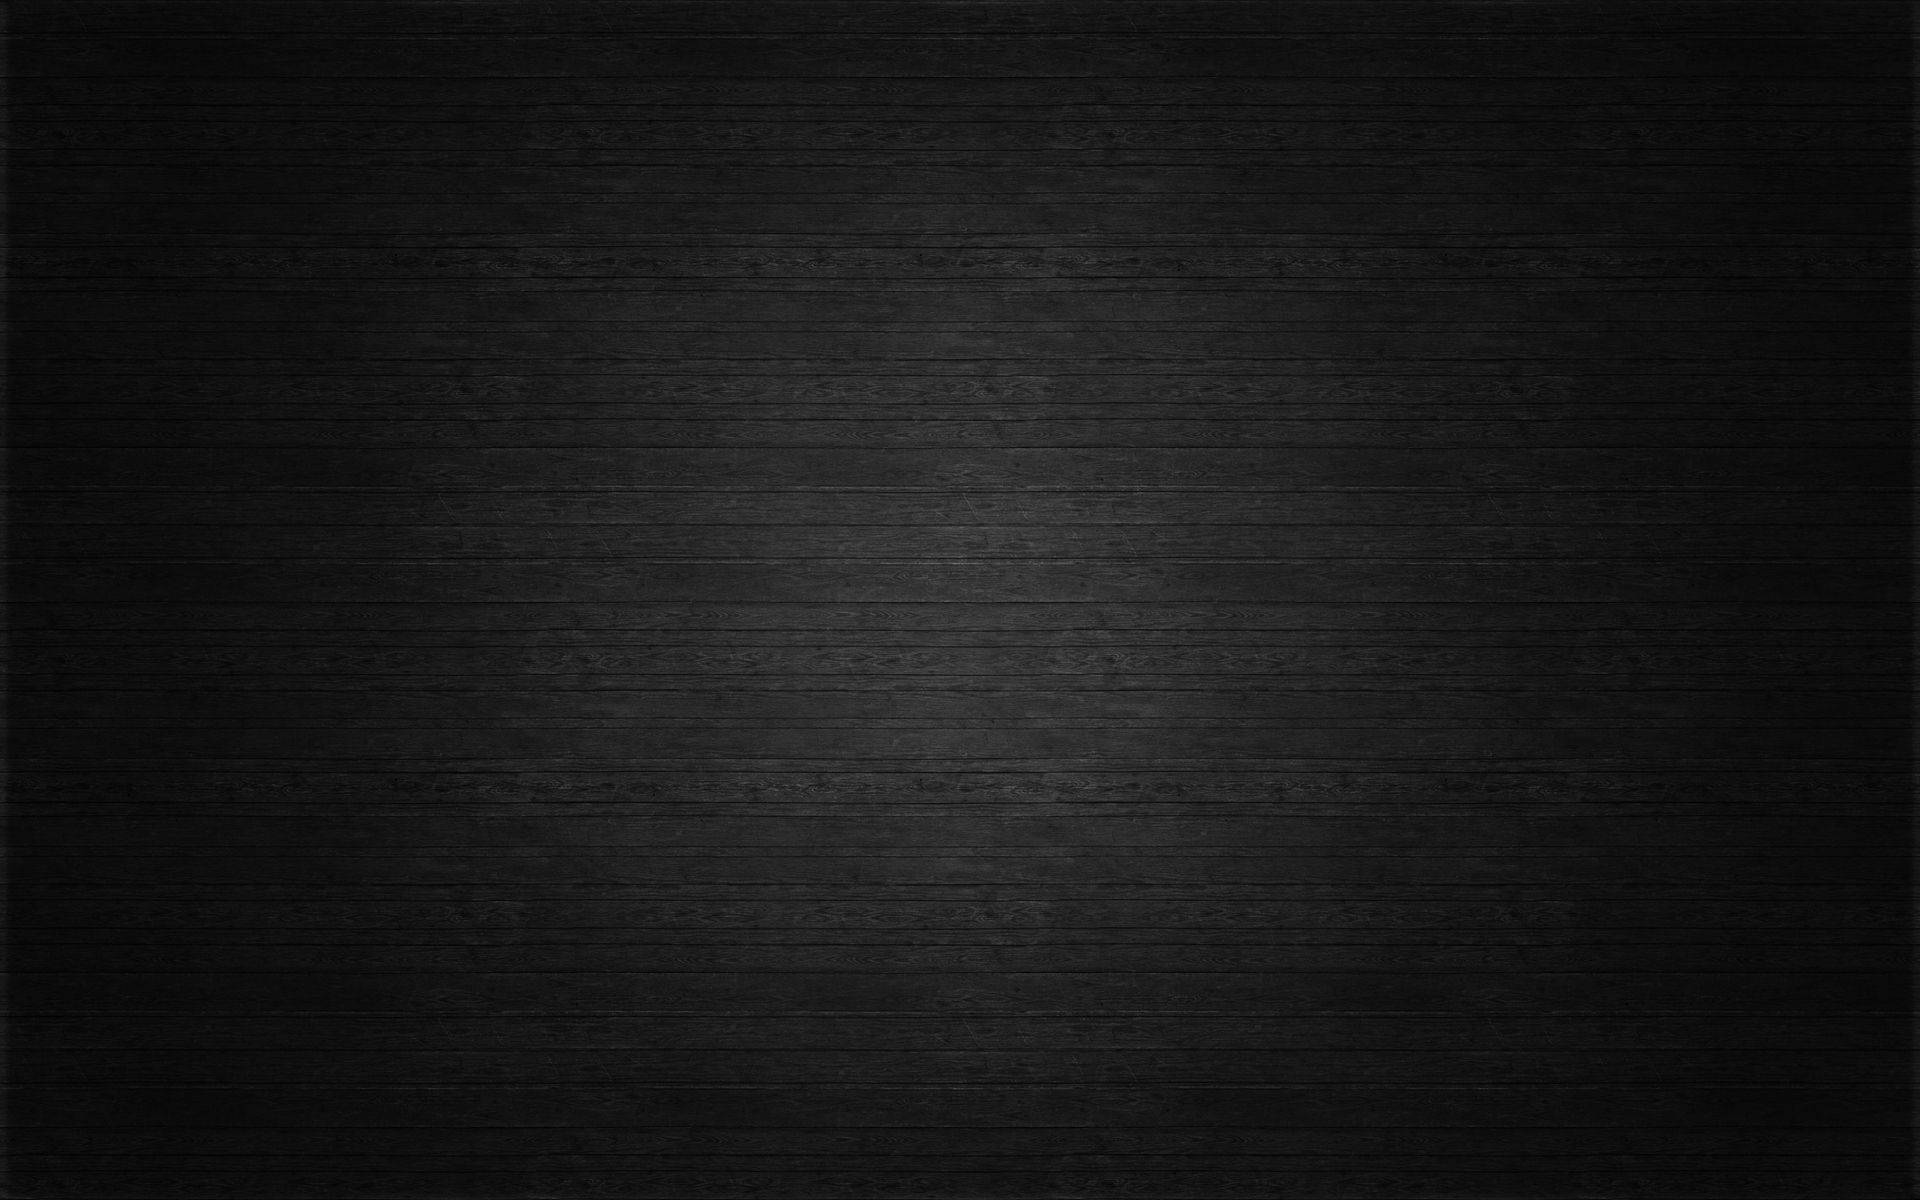 Gỗ vân đen: Gỗ vân đen huyền bí và đầy quyến rũ không chỉ làm tăng tính thẩm mỹ mà còn tạo nên sự độc đáo và sang trọng cho bất cứ phòng khách nào. Hãy truy cập ngay vào các hình ảnh liên quan đến từ khóa này để cùng khám phá vẻ đẹp của gỗ vân đen.